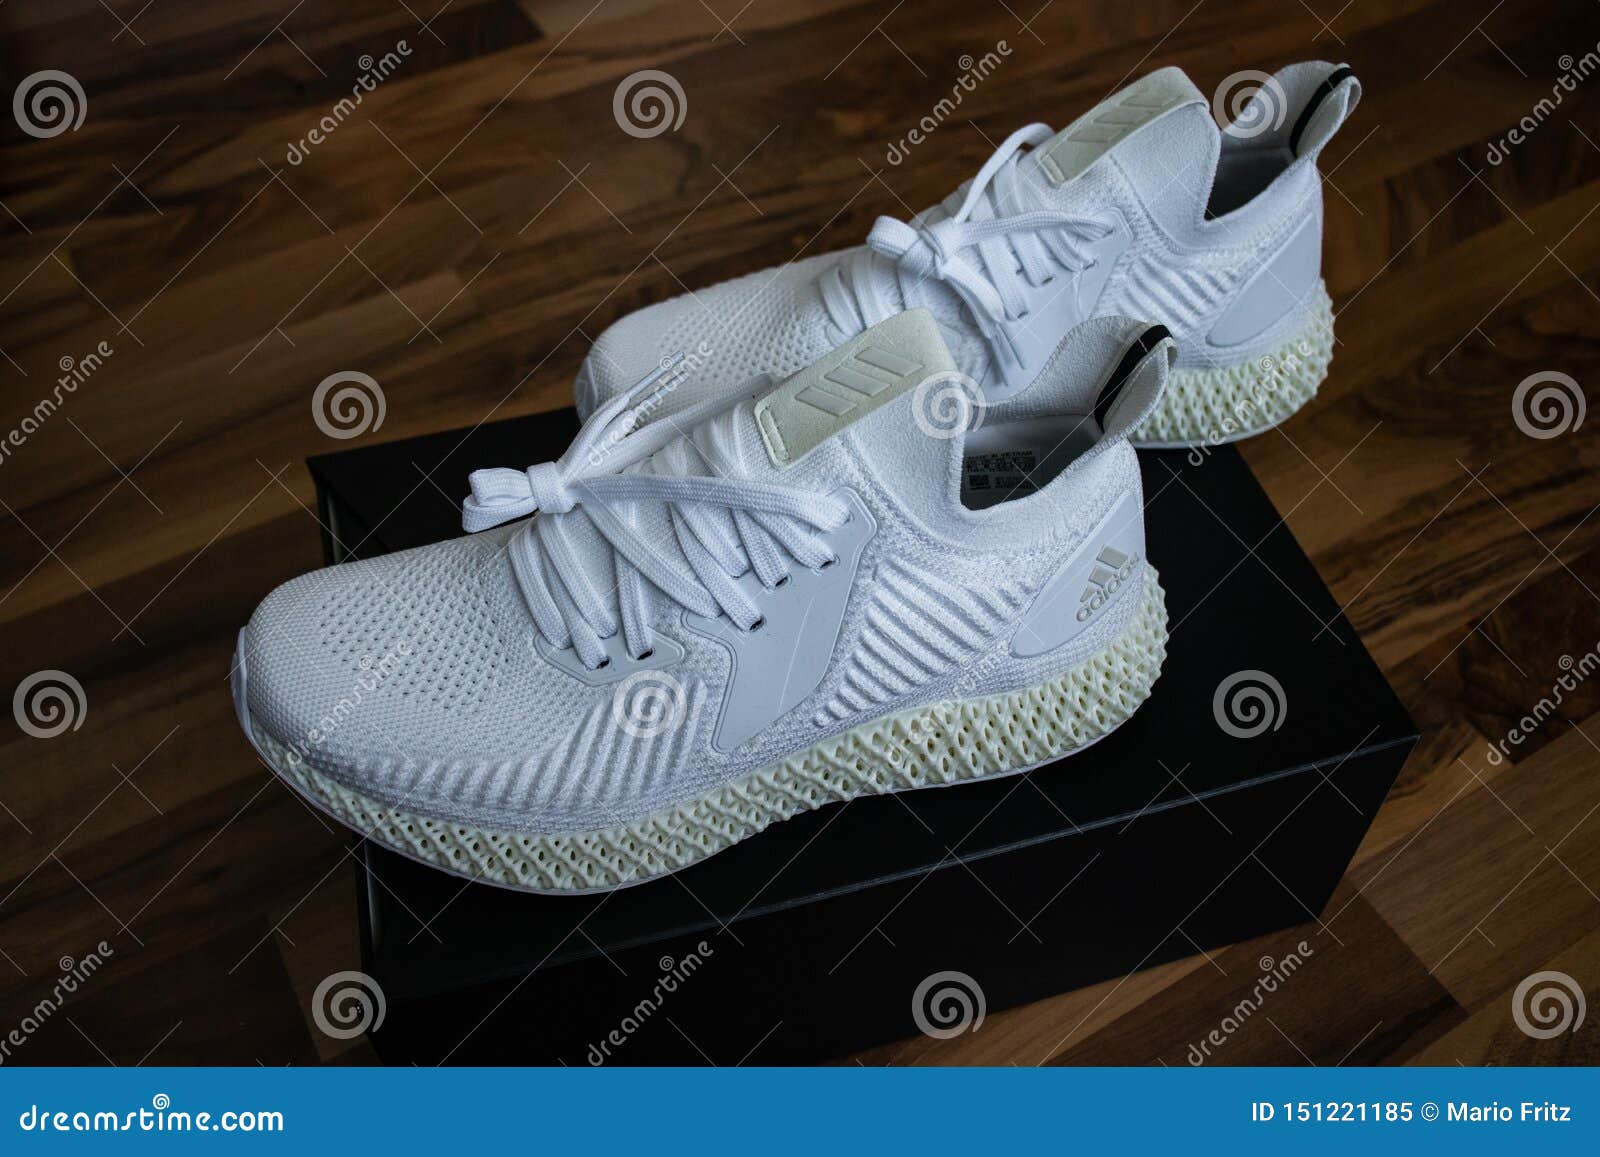 Zapatos Alphaedge 4D De Adidas Blanco Y Amarillo editorial - Imagen de aptitud, lifestyle: 151221185